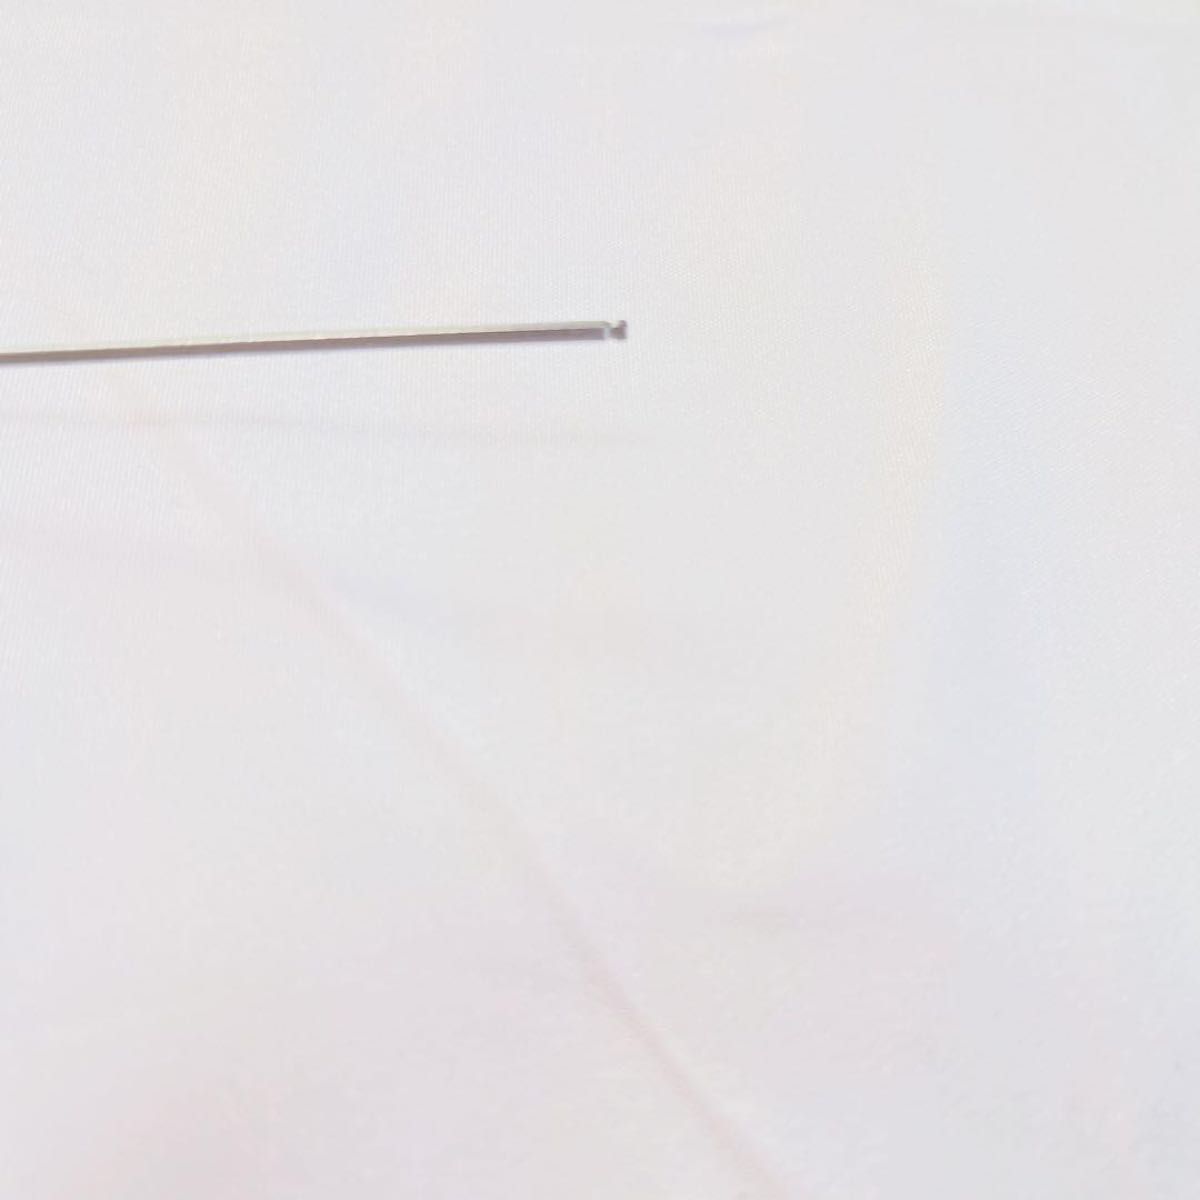 uxcell ボールエンド六角レンチ L字型ロングアーム ツール 1.5 mm シルバー 銀